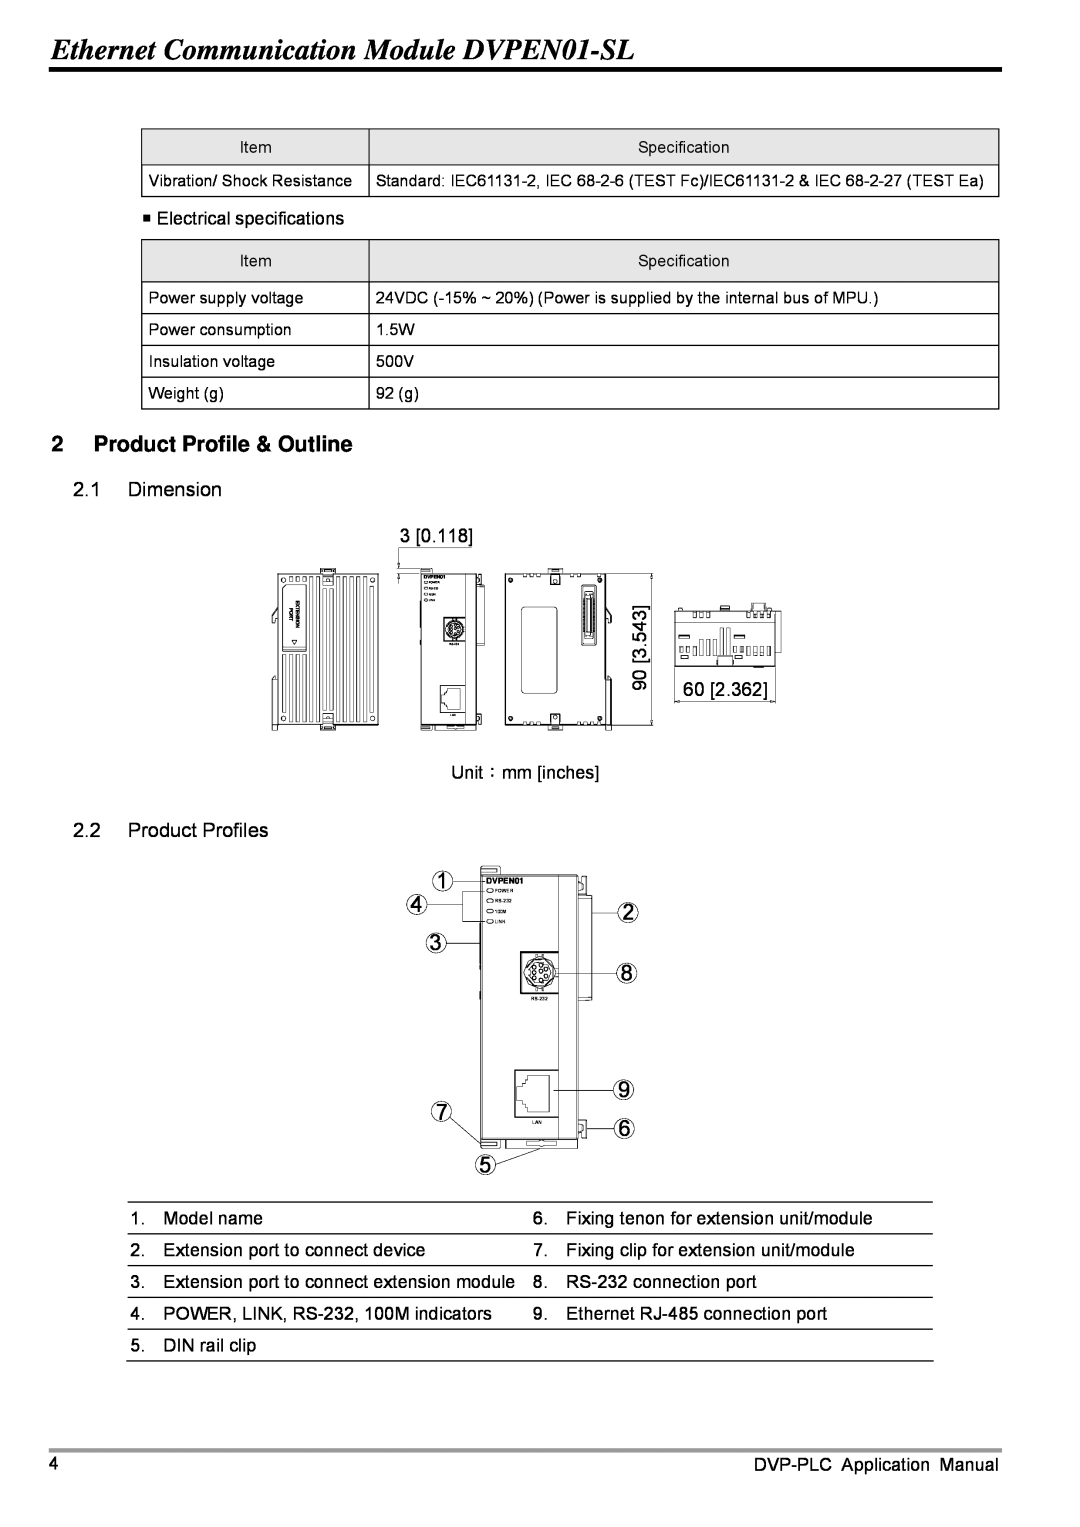 Delta Electronics Product Profile & Outline, Ethernet Communication Module DVPEN01-SL, Dimension, Product Profiles 